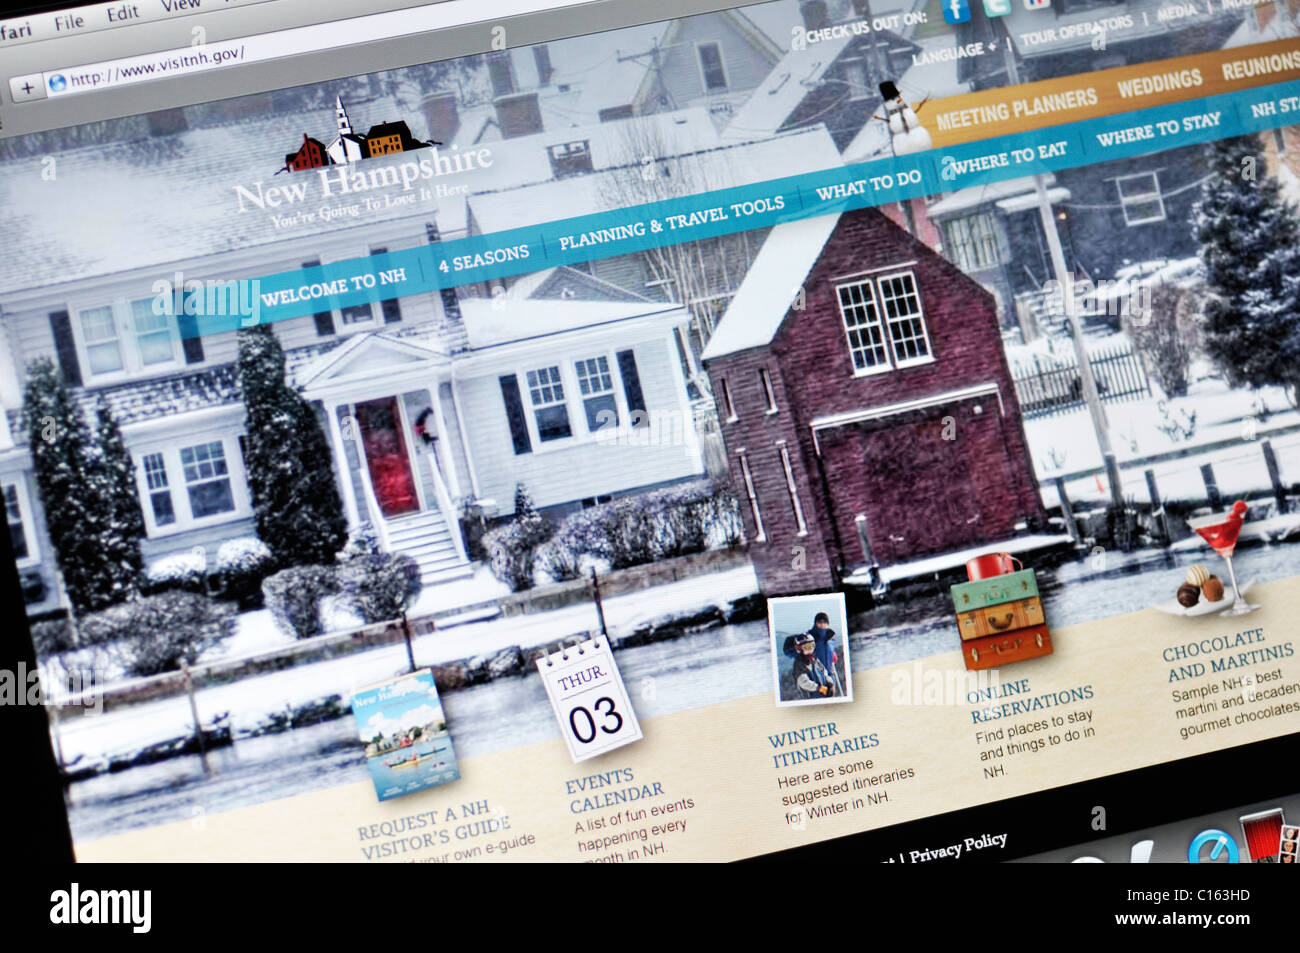 New Hampshire stato ufficiale sito sul turismo Foto Stock